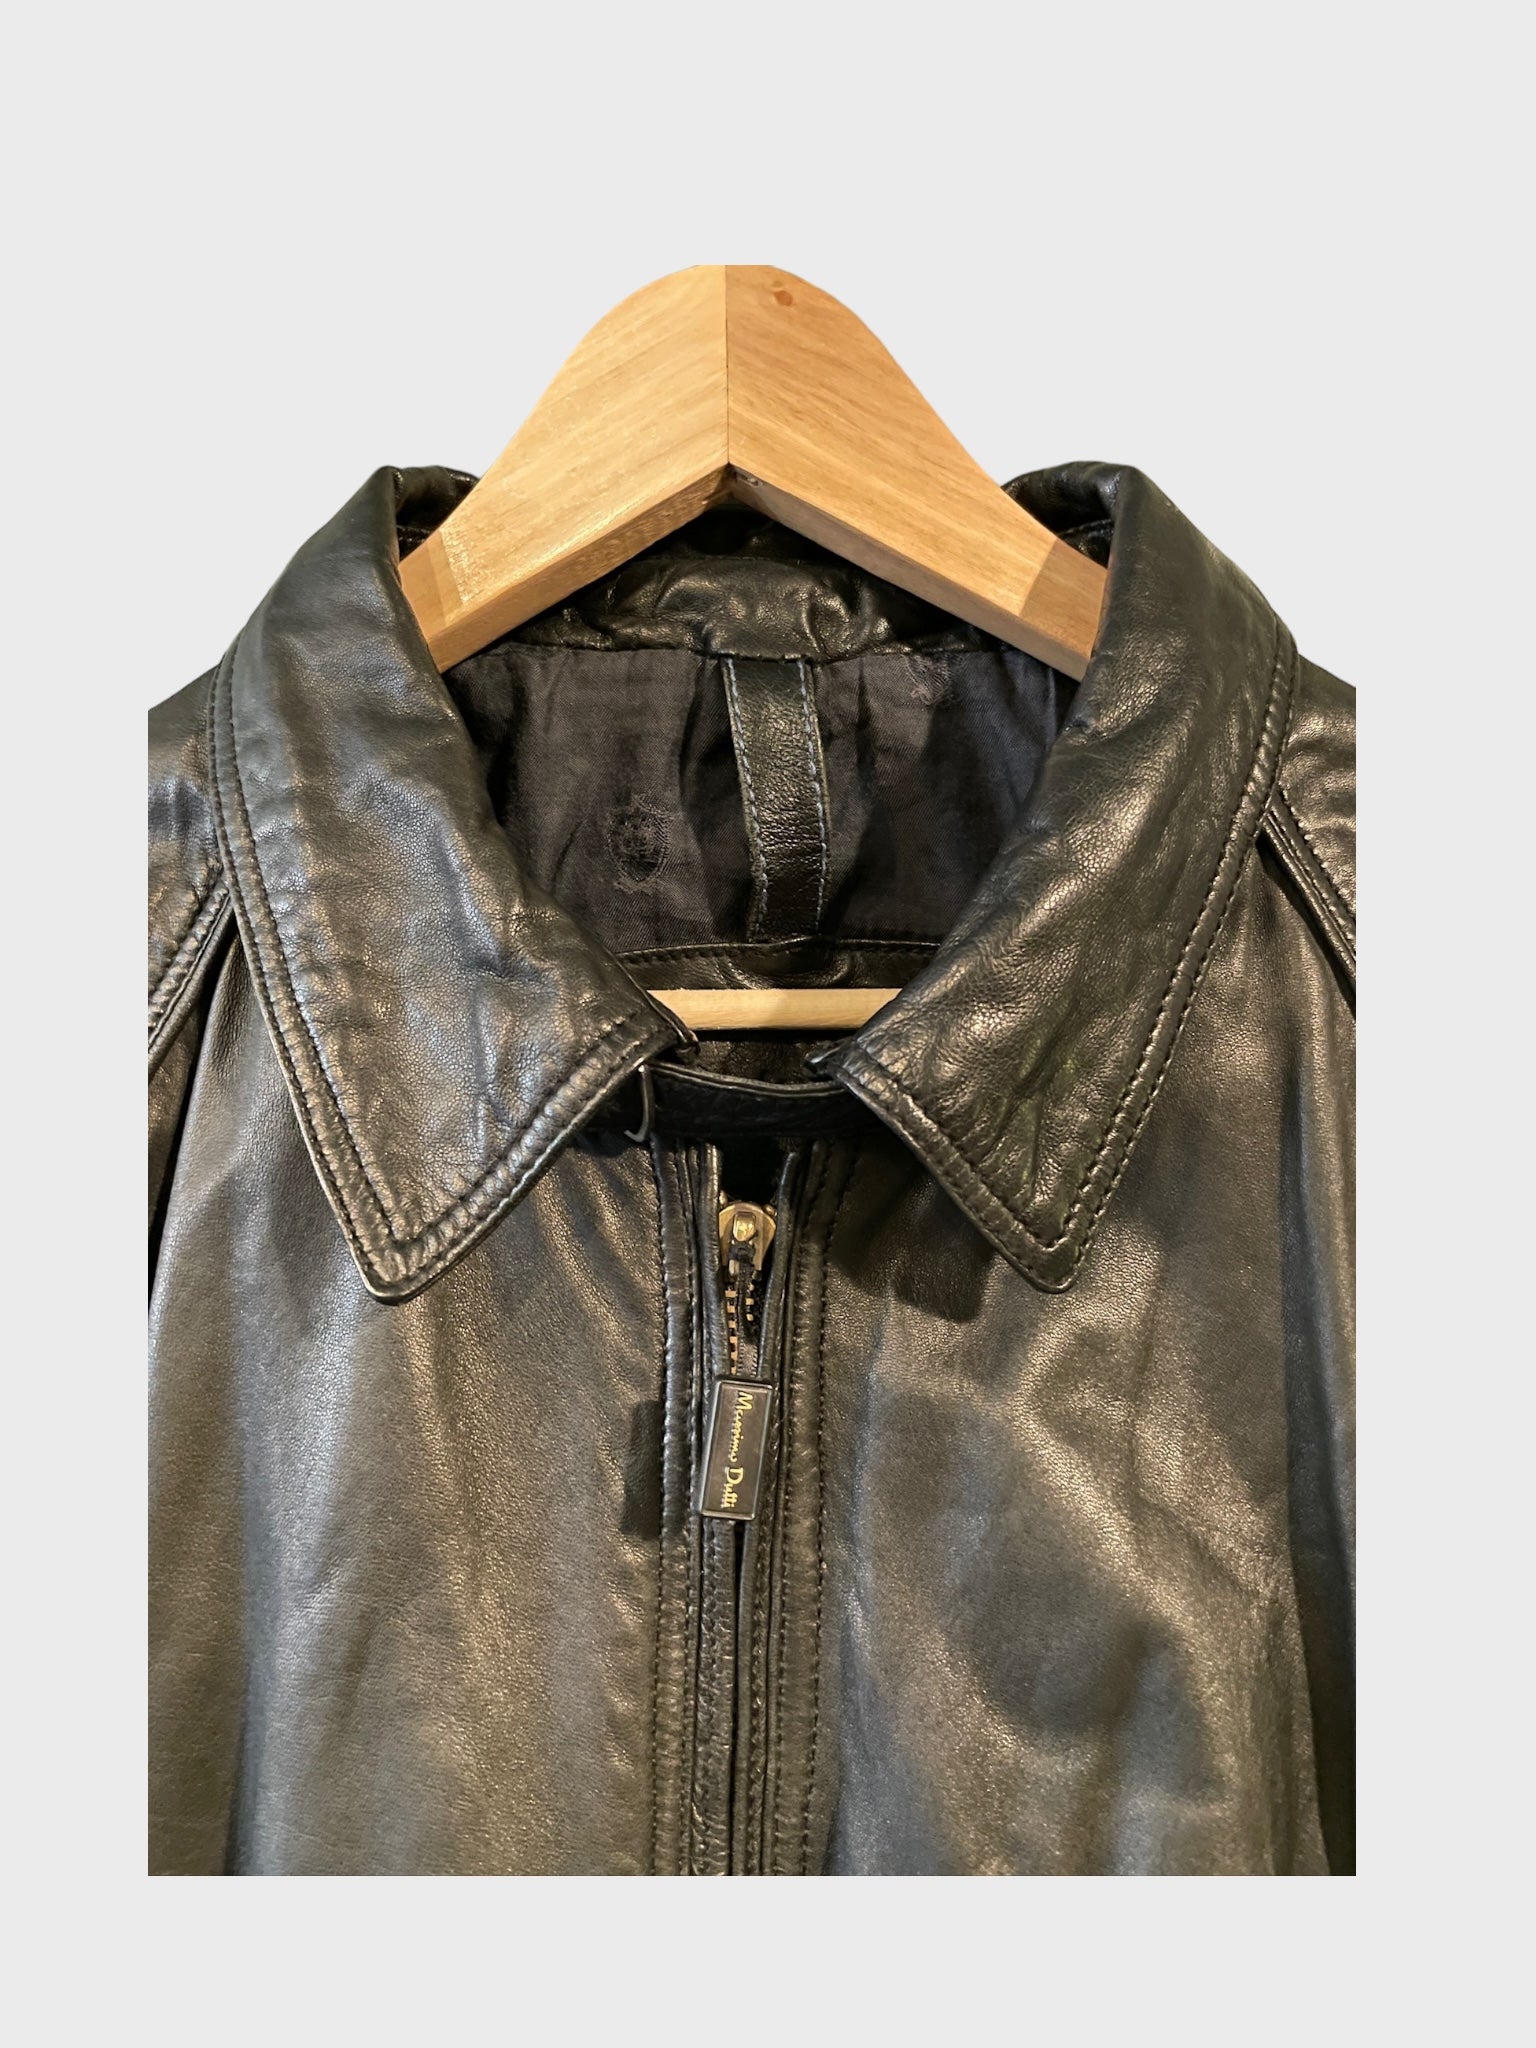 Massimo Dutti Leather Jacket Boxy